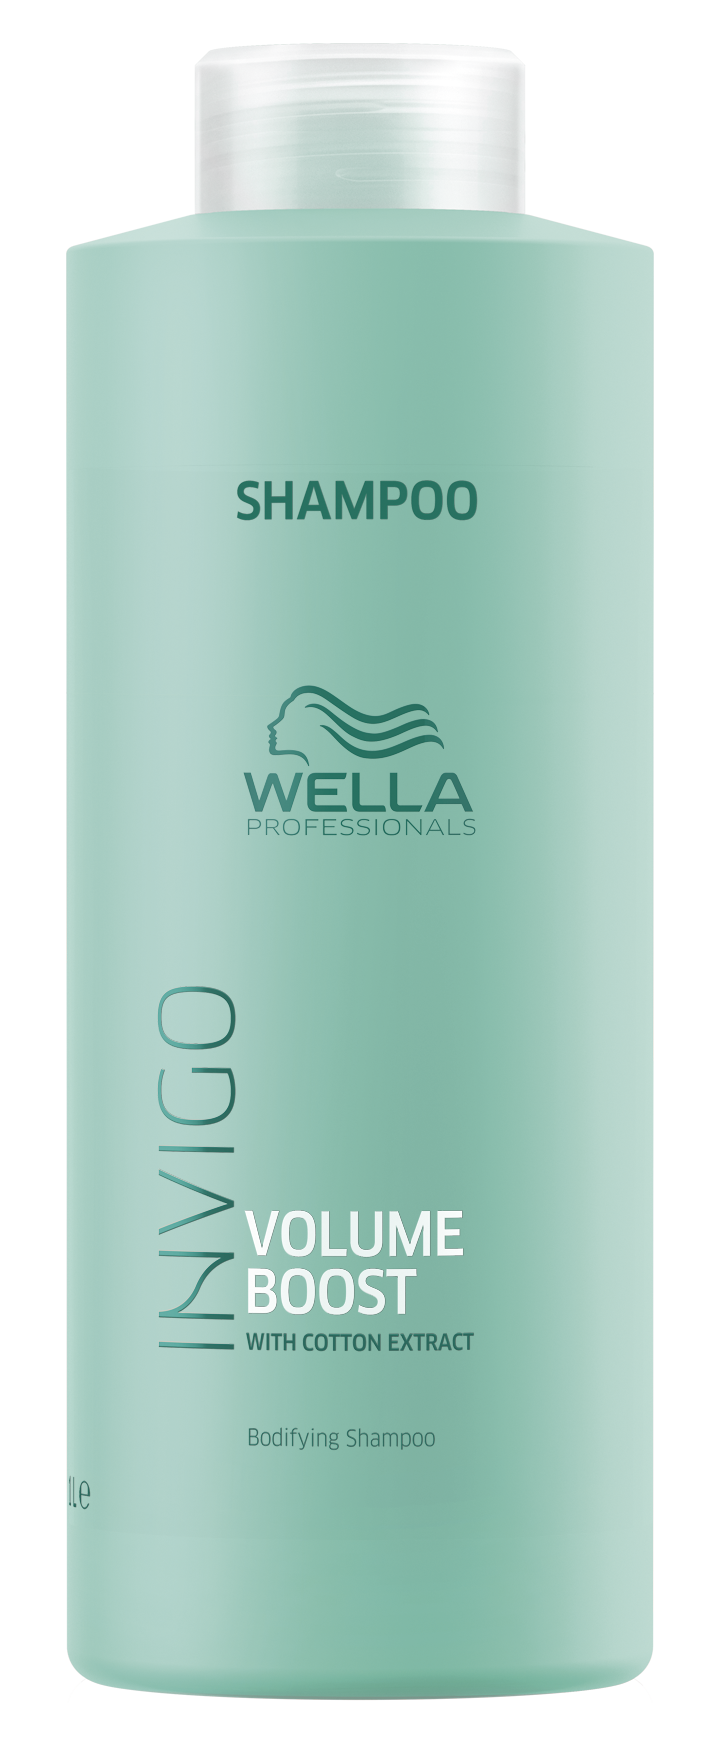 WELLA PROFESSIONALS Шампунь для придания объема / Volume Boost 1000 мл wella professionals шампунь для придания объема volume boost 250 мл